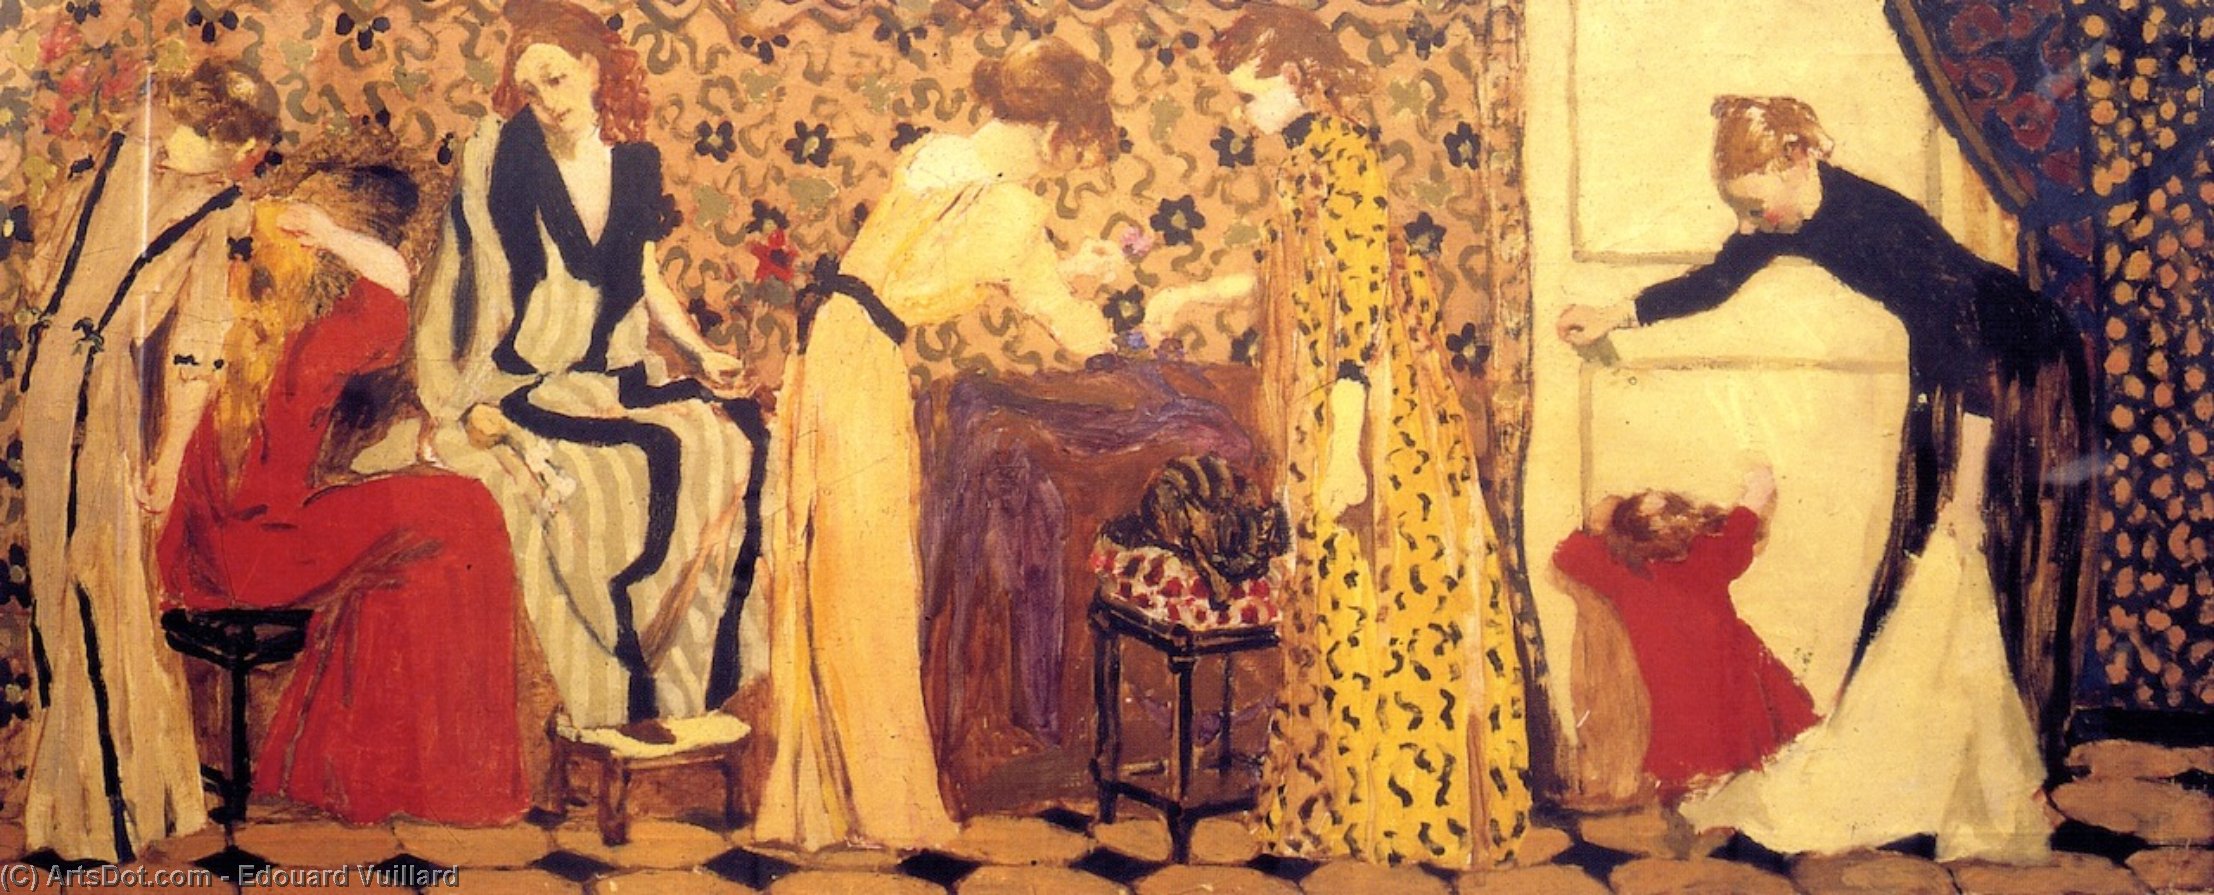 WikiOO.org - Εγκυκλοπαίδεια Καλών Τεχνών - Ζωγραφική, έργα τέχνης Jean Edouard Vuillard - The Dressmaking Studio